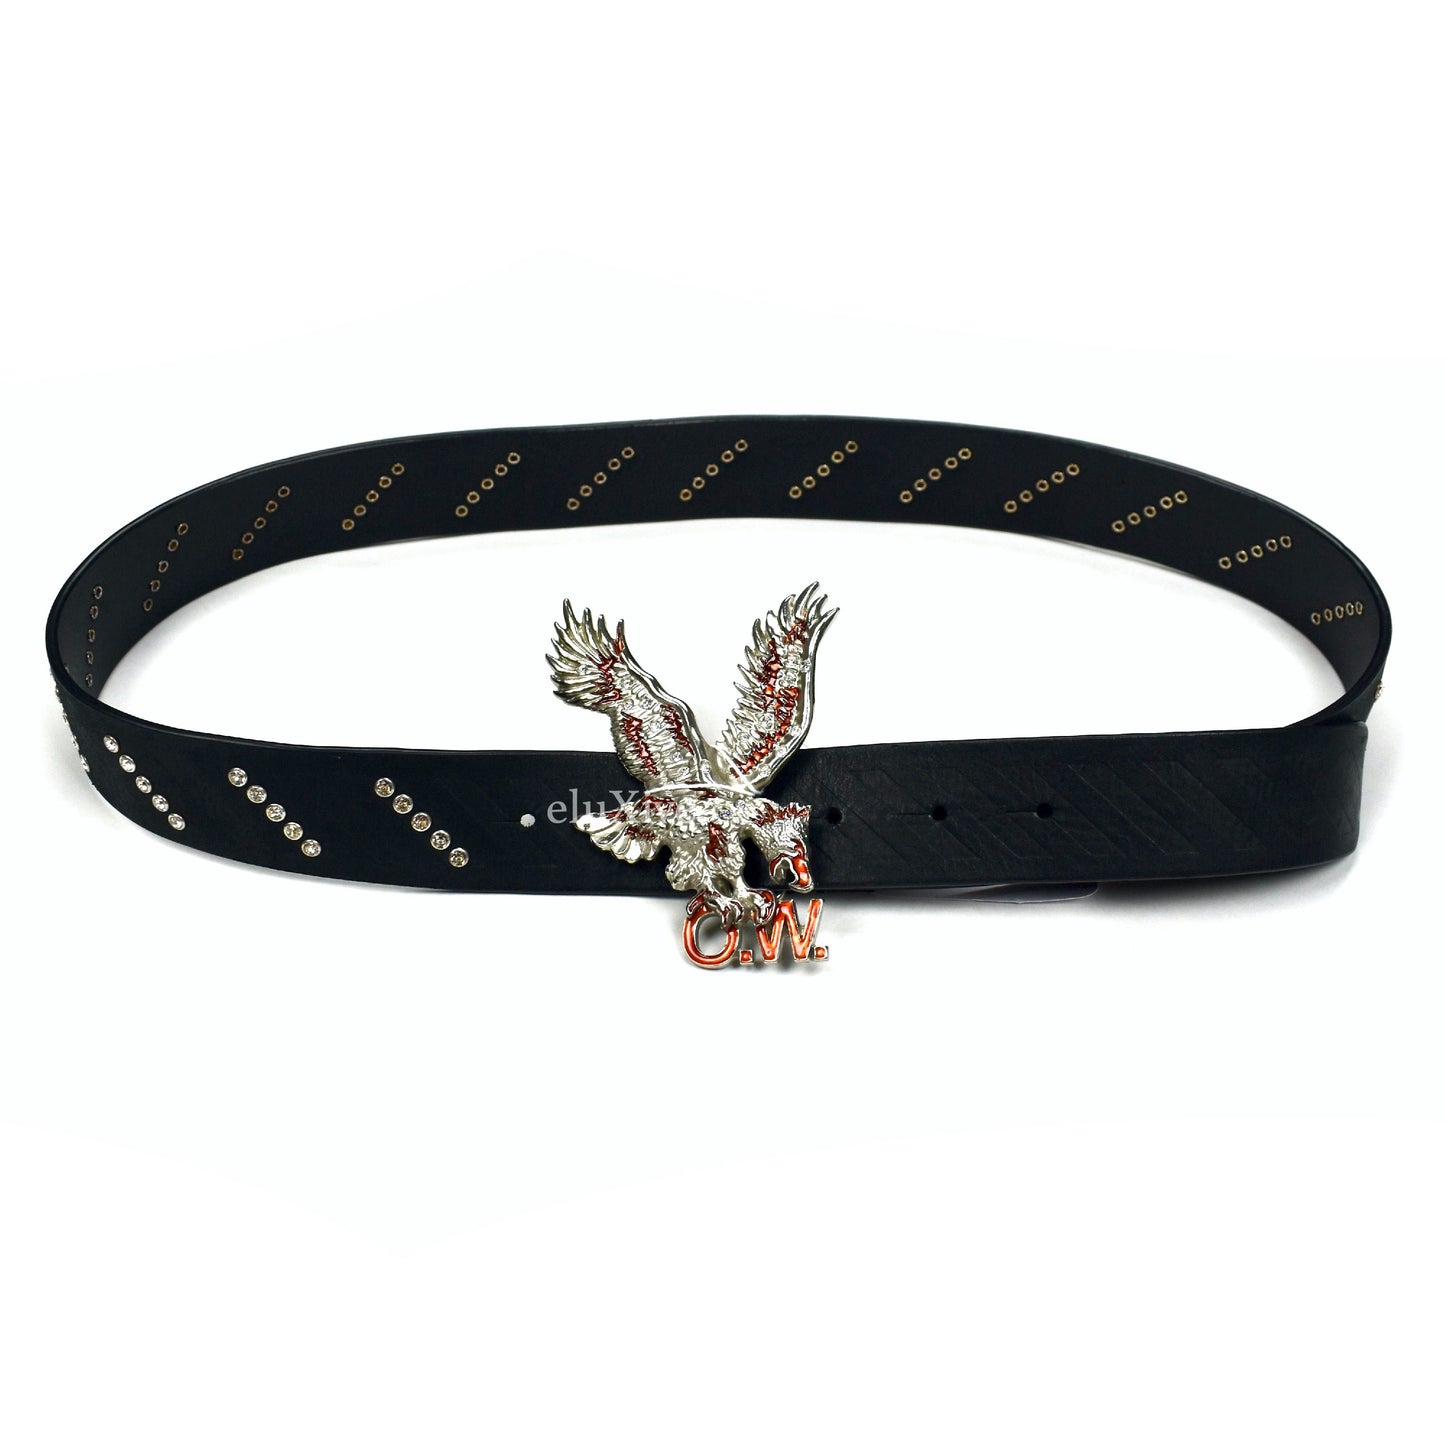 Off-White - Black Eagle Buckle Crystal Studded Leather Belt